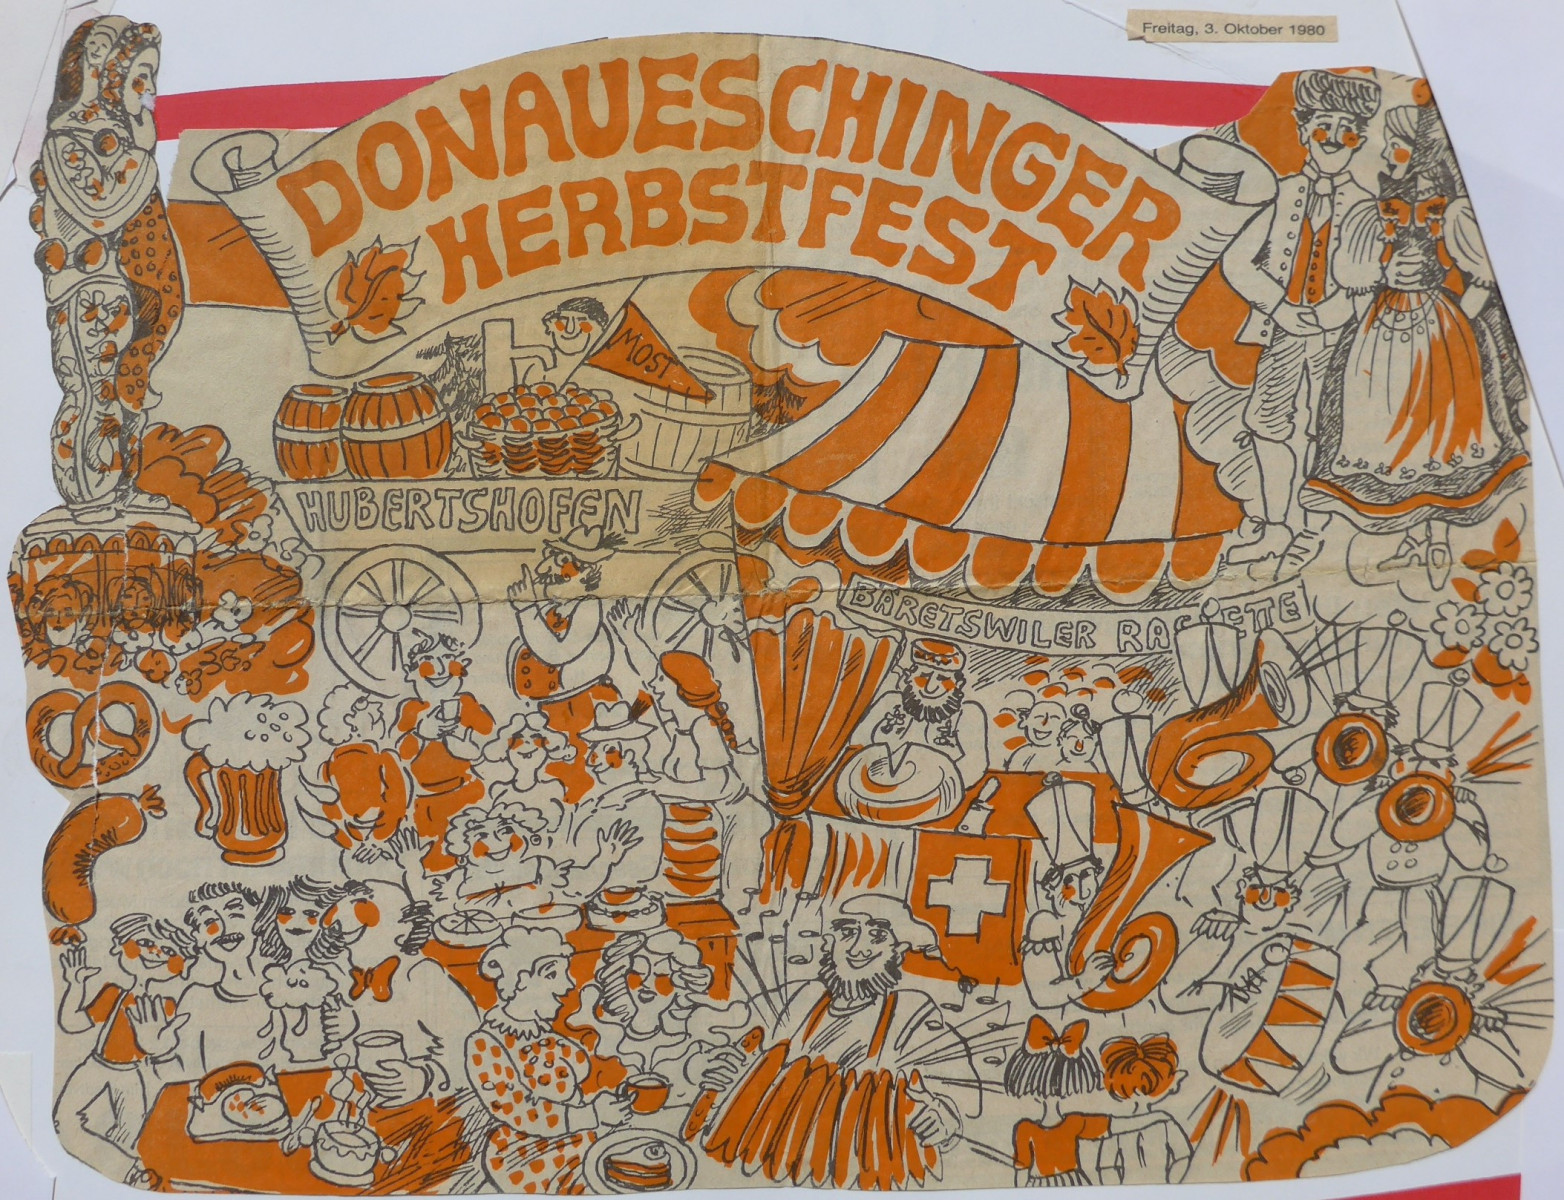 Sultanat Bäretswil, Werbung für das Herbstfest Donaueschingen 1980 / Raclettstand Sultanat Bäretswil